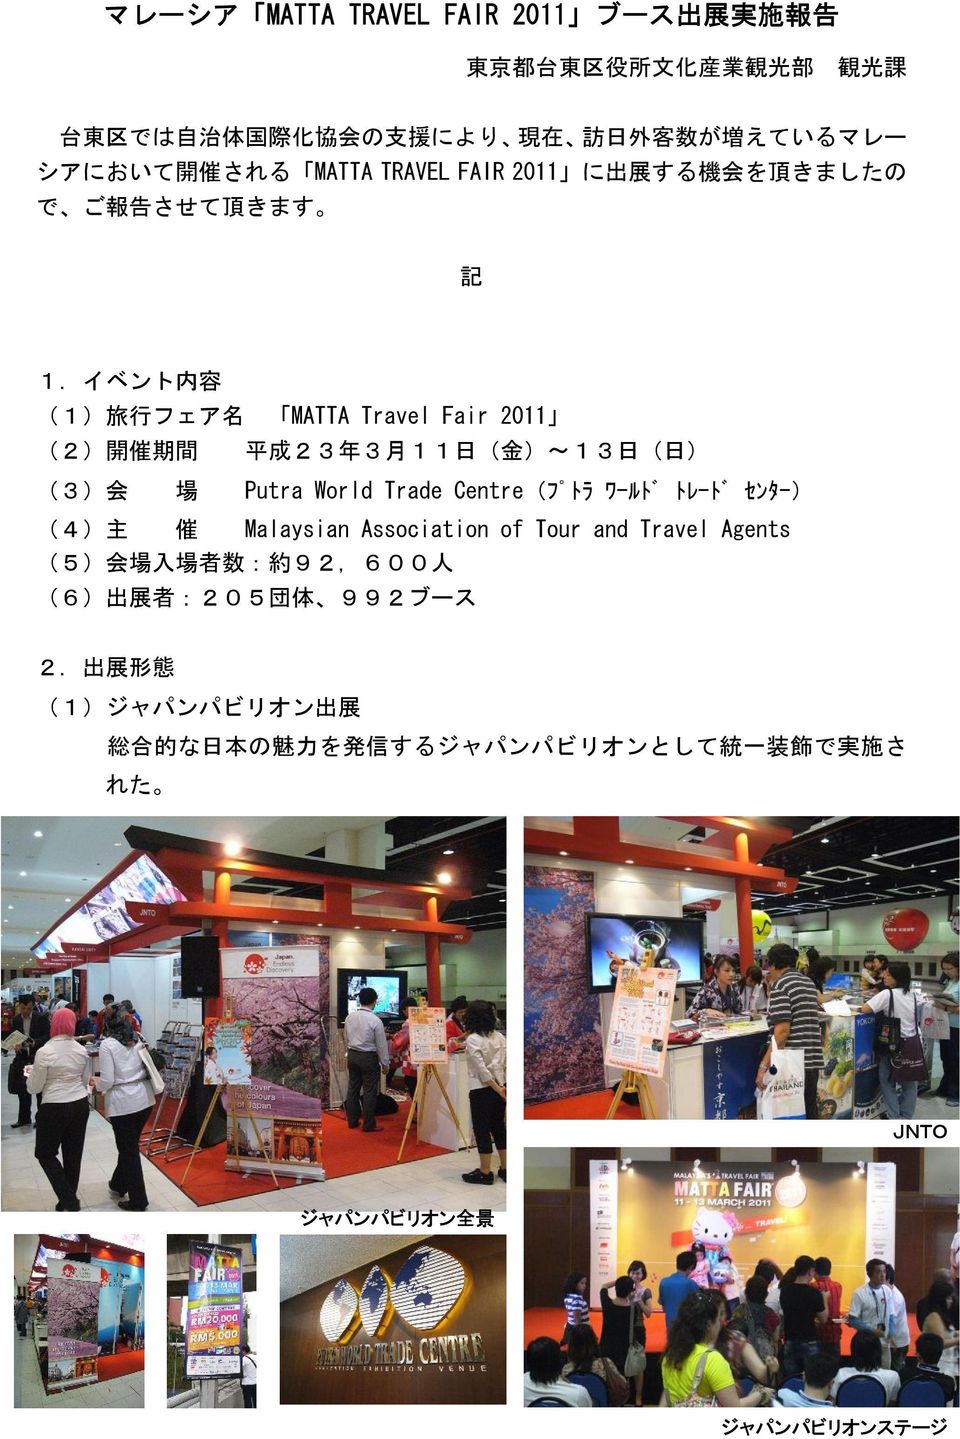 イベント 内 容 (1) 旅 行 フェア 名 MATTA Travel Fair 2011 (2) 開 催 期 間 平 成 23 年 3 月 11 日 ( 金 )~13 日 ( 日 ) (3) 会 場 Putra World Trade Centre(フ トラ ワールト トレート センター) (4)